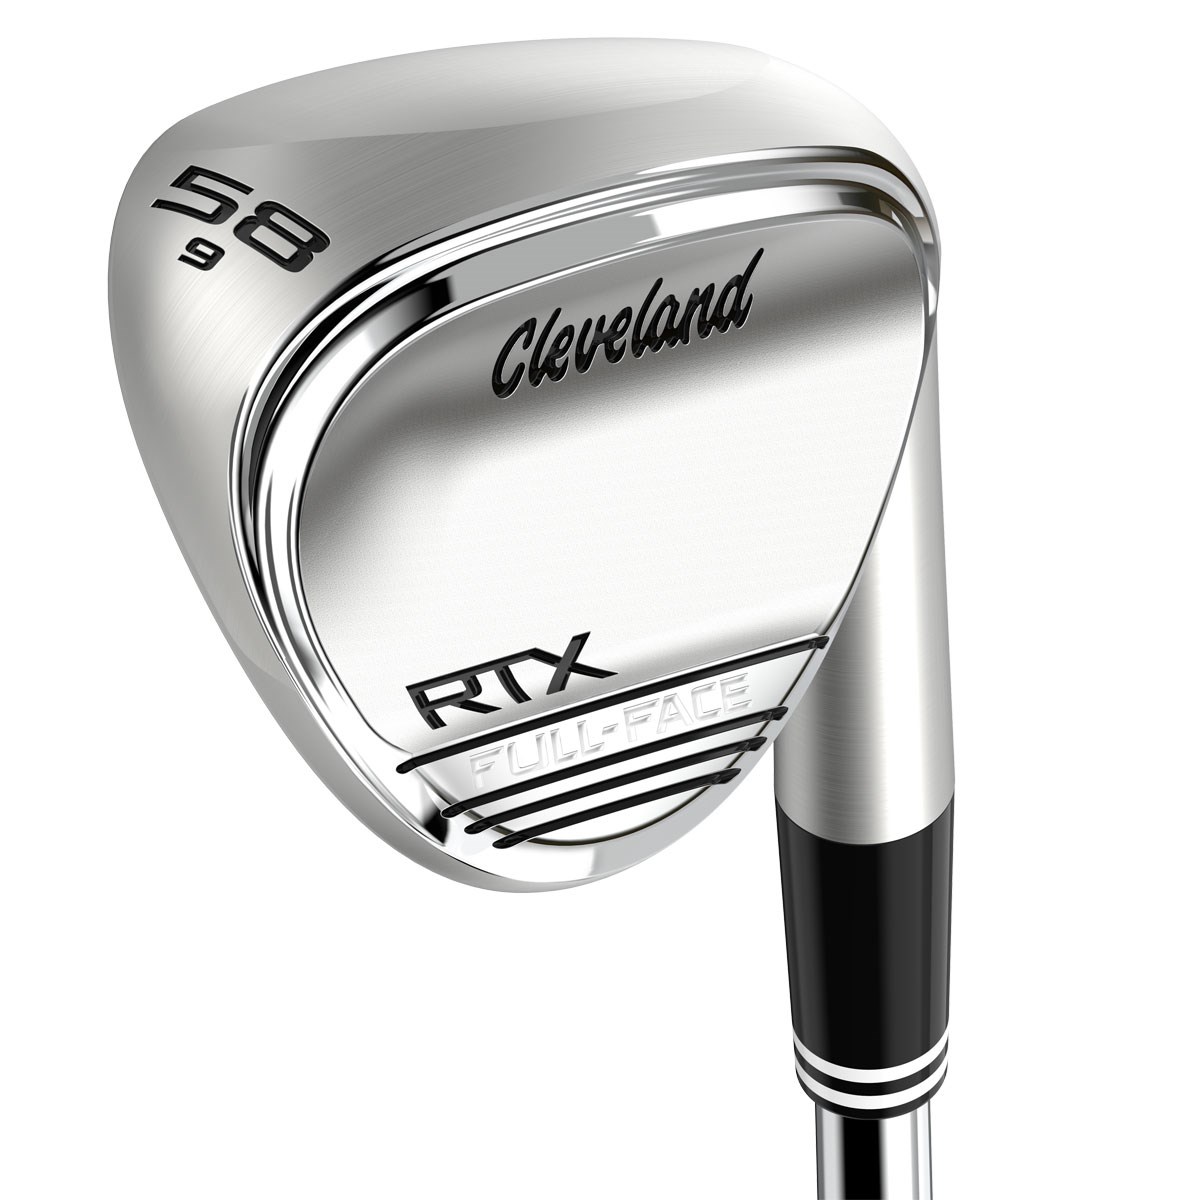 クリーブランドゴルフ Cleveland Golf ブラックサテン RTX 950GH スチールシャフト 58 右利き ウエッジ Low  ロフト角:58度フレックス:S ZIPCORE メンズ N.S.PRO 6